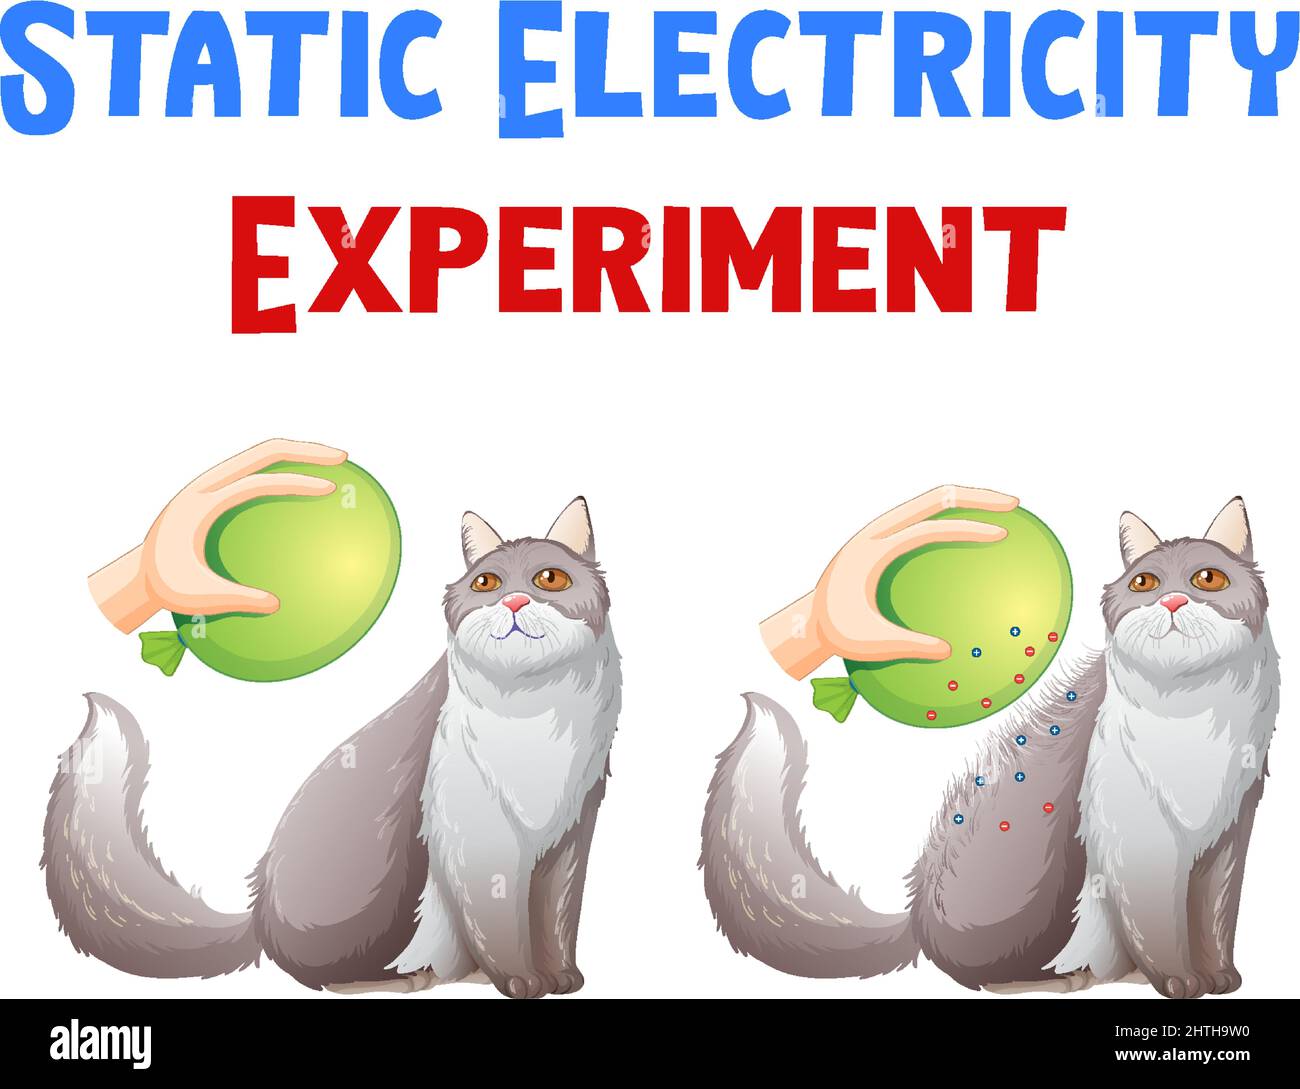 Diagramm mit der Illustration des Experiments für statische Elektrizität Stock Vektor